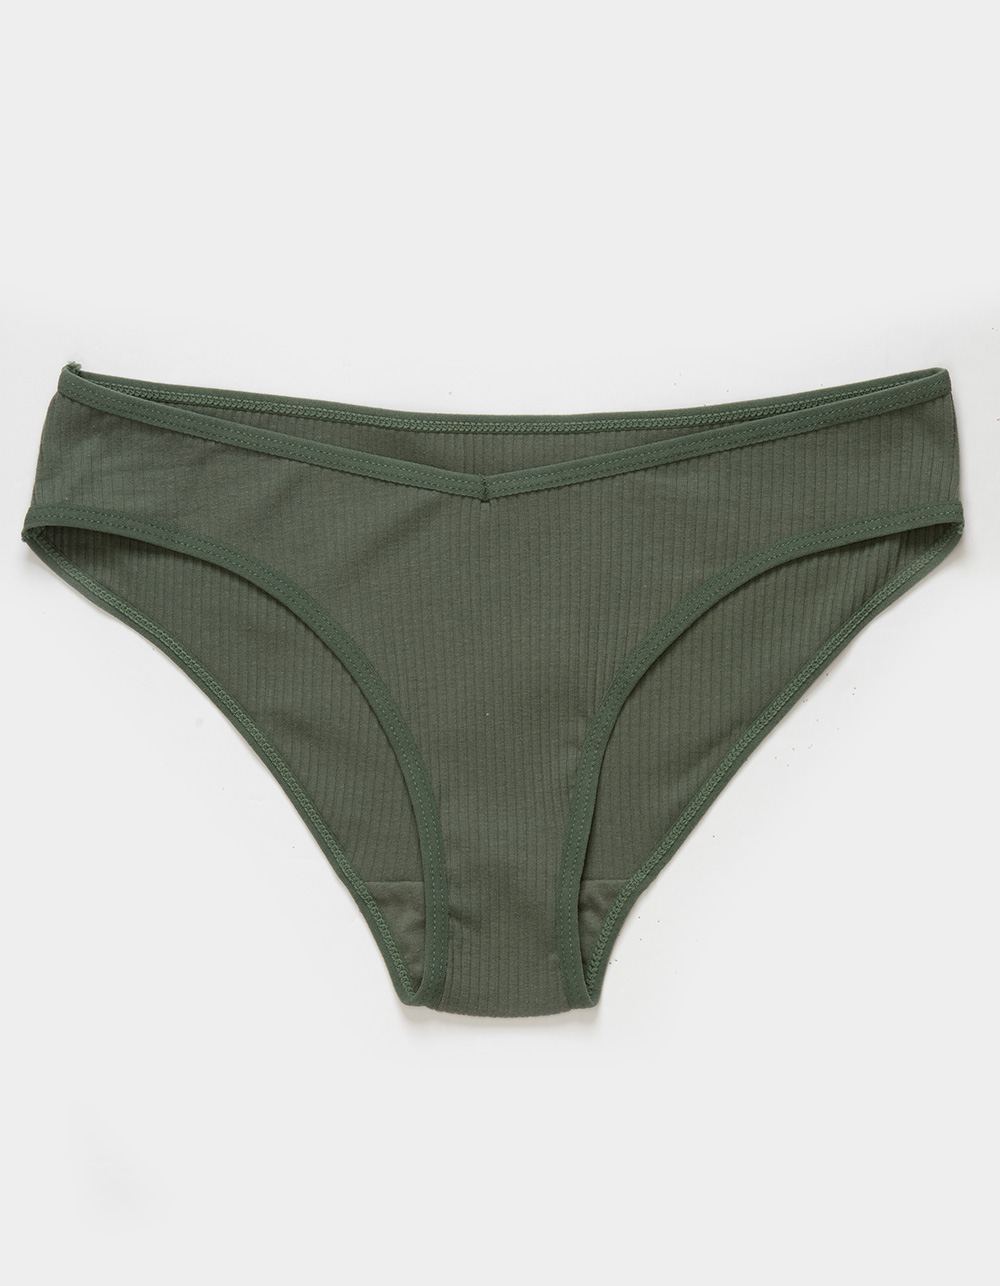 Olive Panty Print - Panties